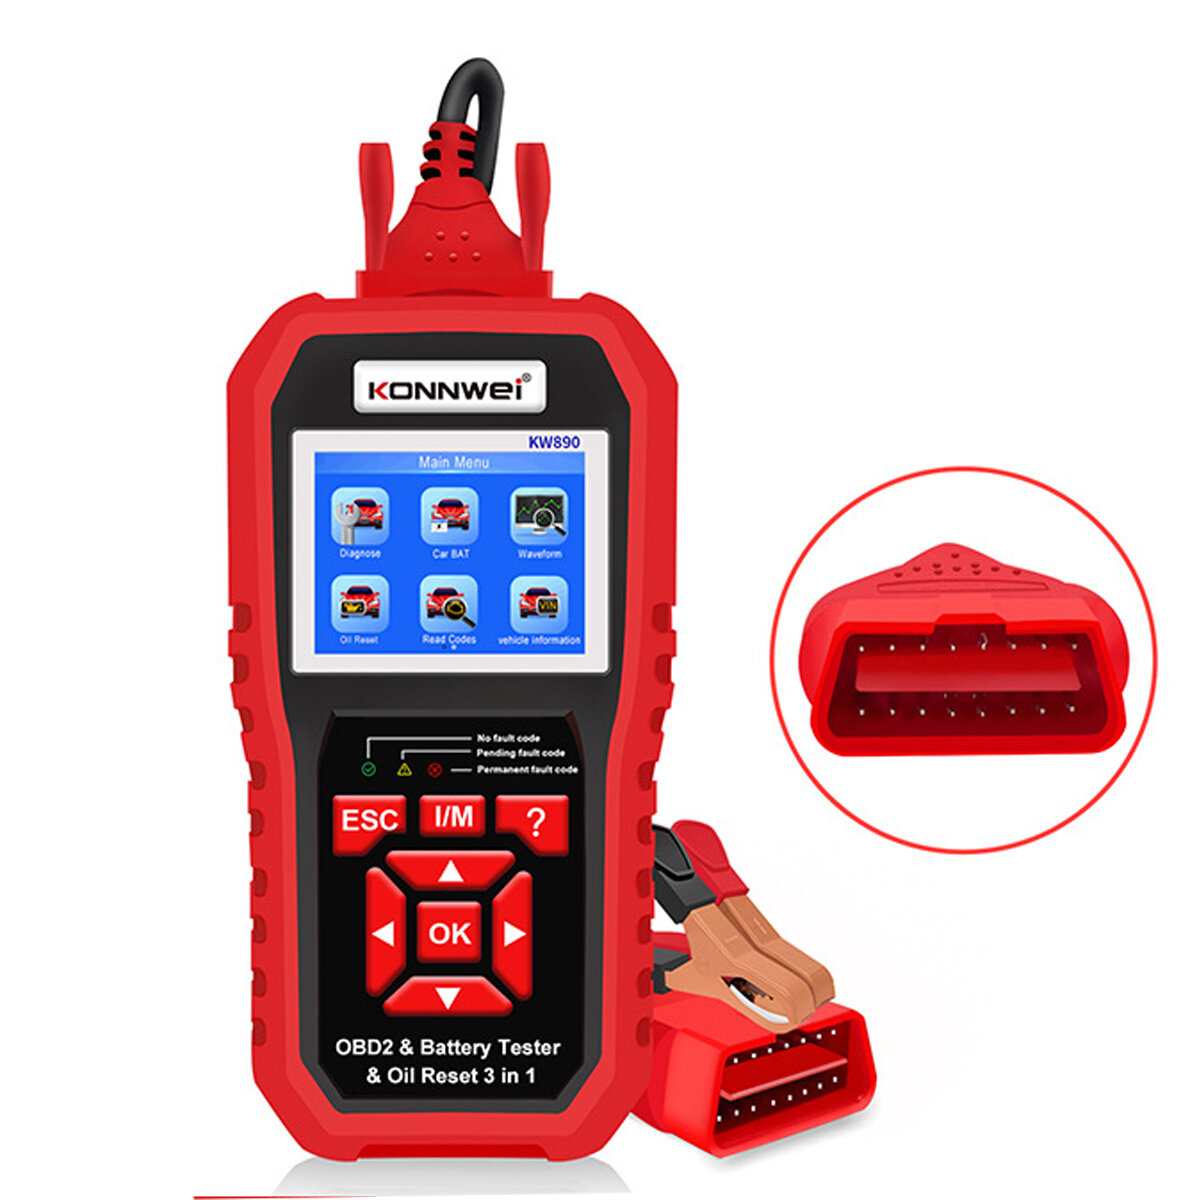 KONNWEI KW890 OBD2 12V Automotive Fault Diagnosis Scanner Instrument Battery Tester Oil Sevice Light Reset for Lead Acid